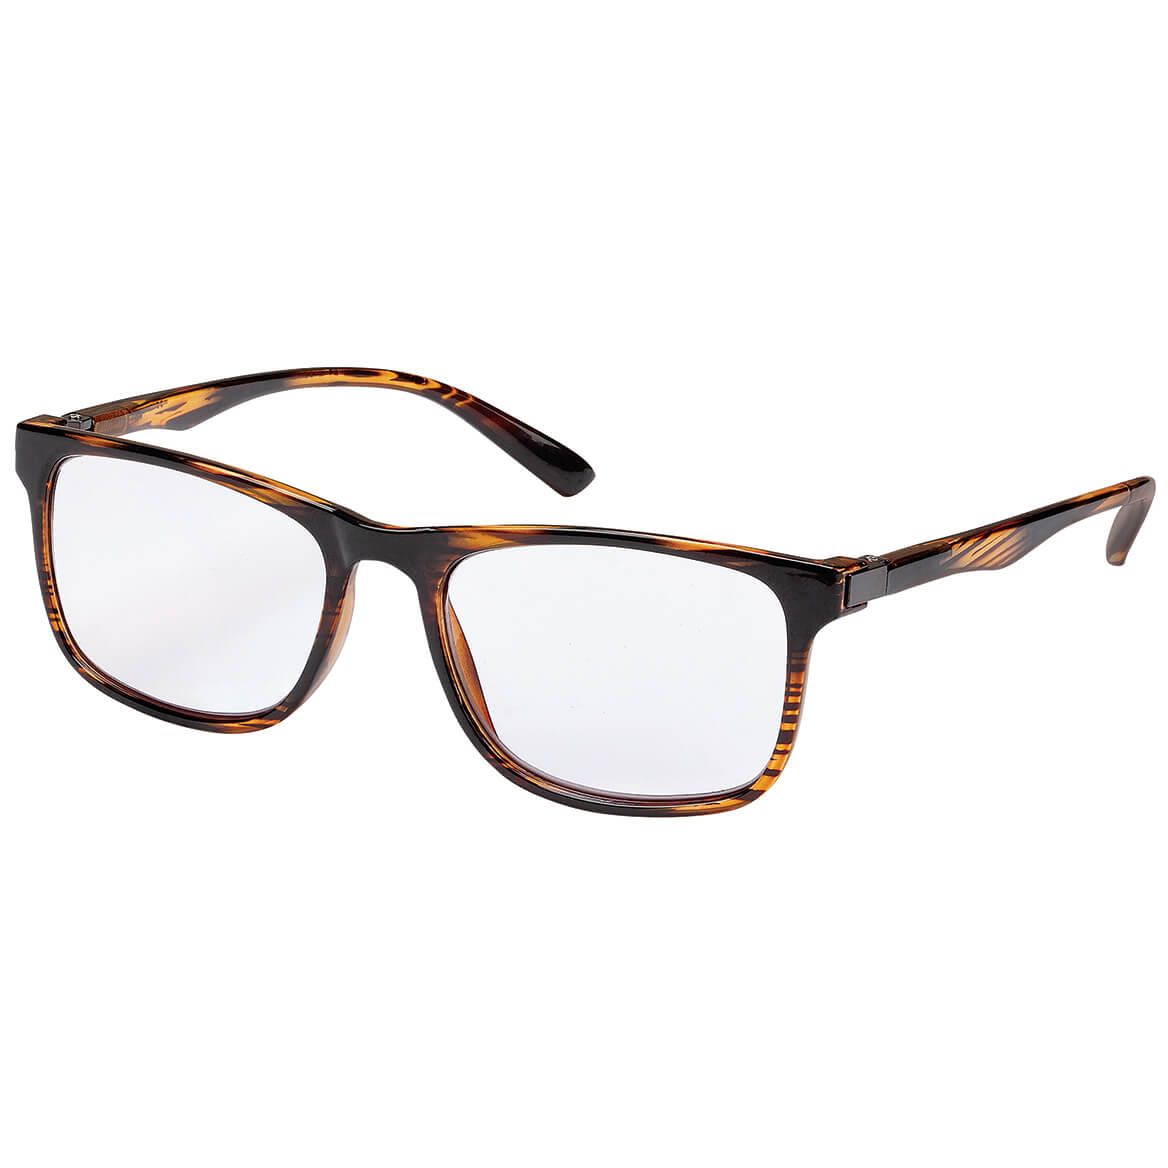 Men's Photochromatic Reading Glasses + '-' + 376968